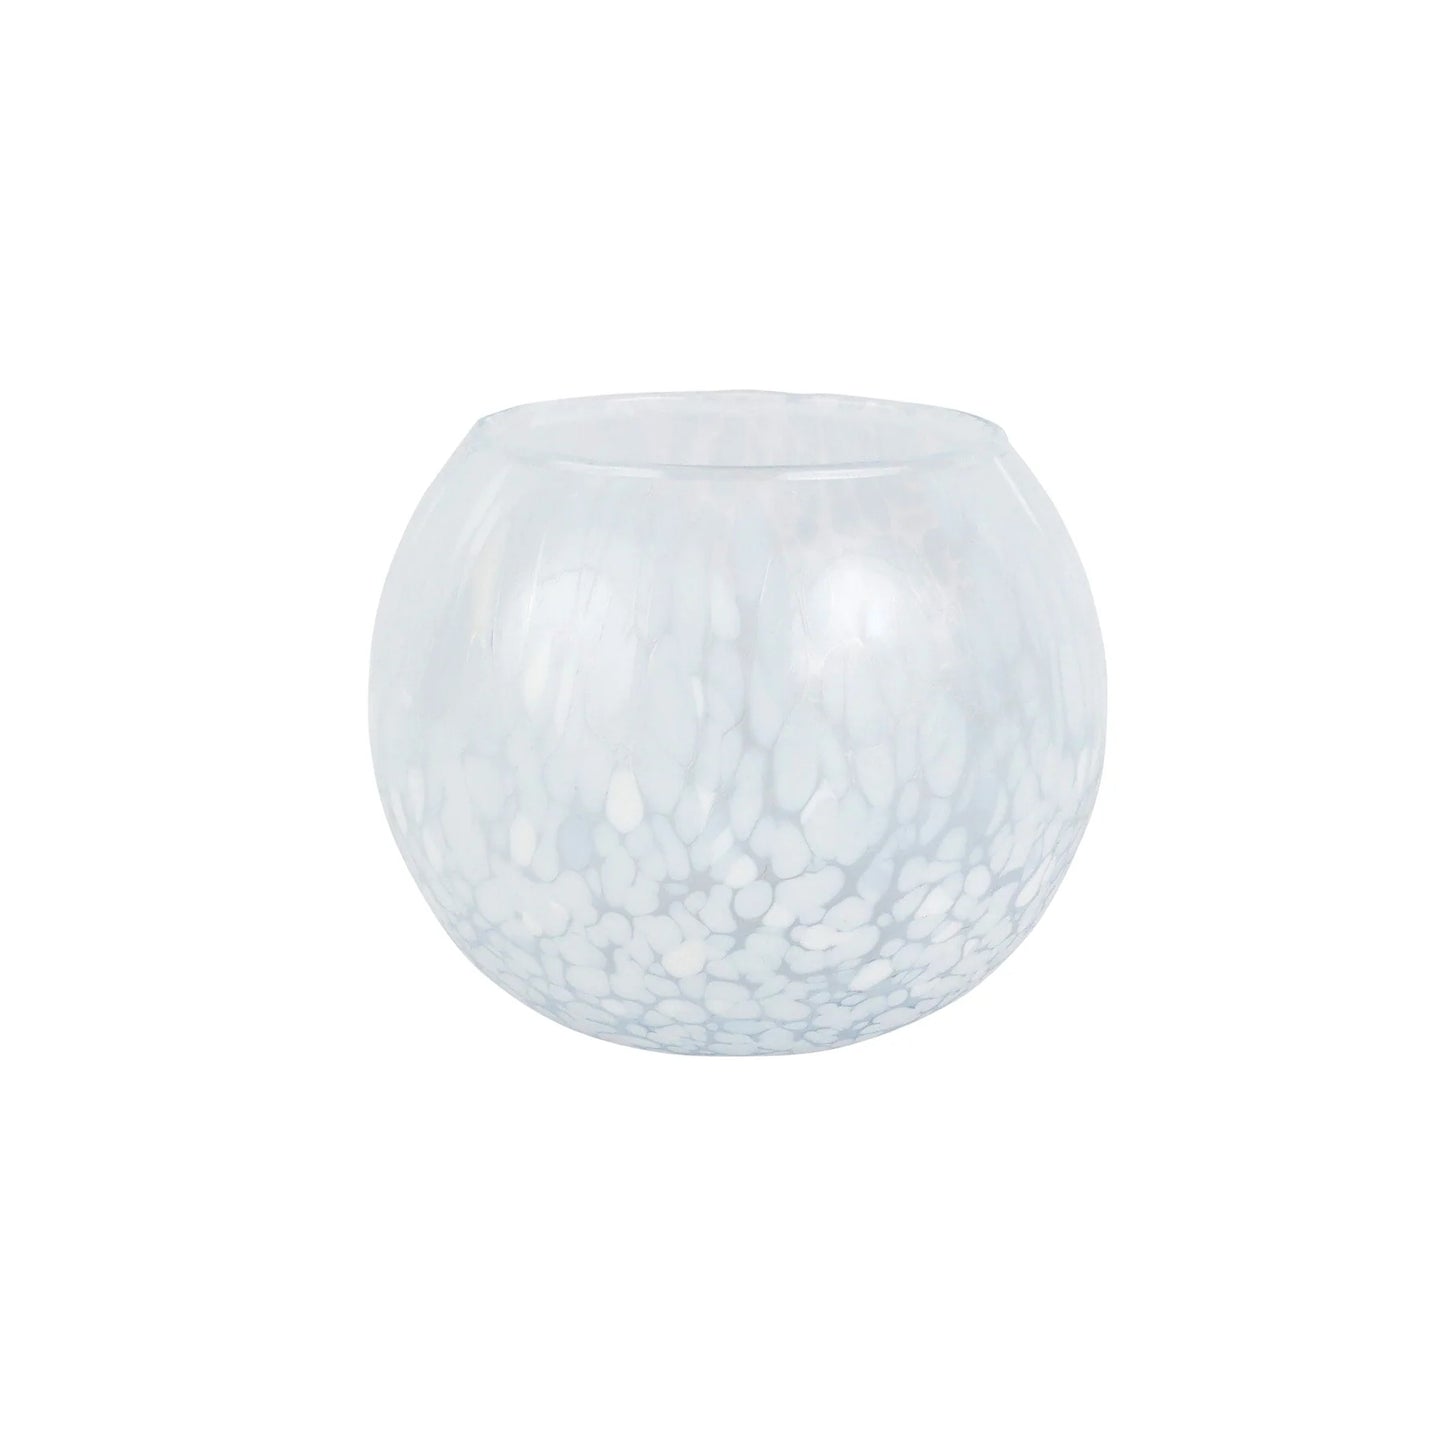 Vietri - Nuvola White Small Round Vase